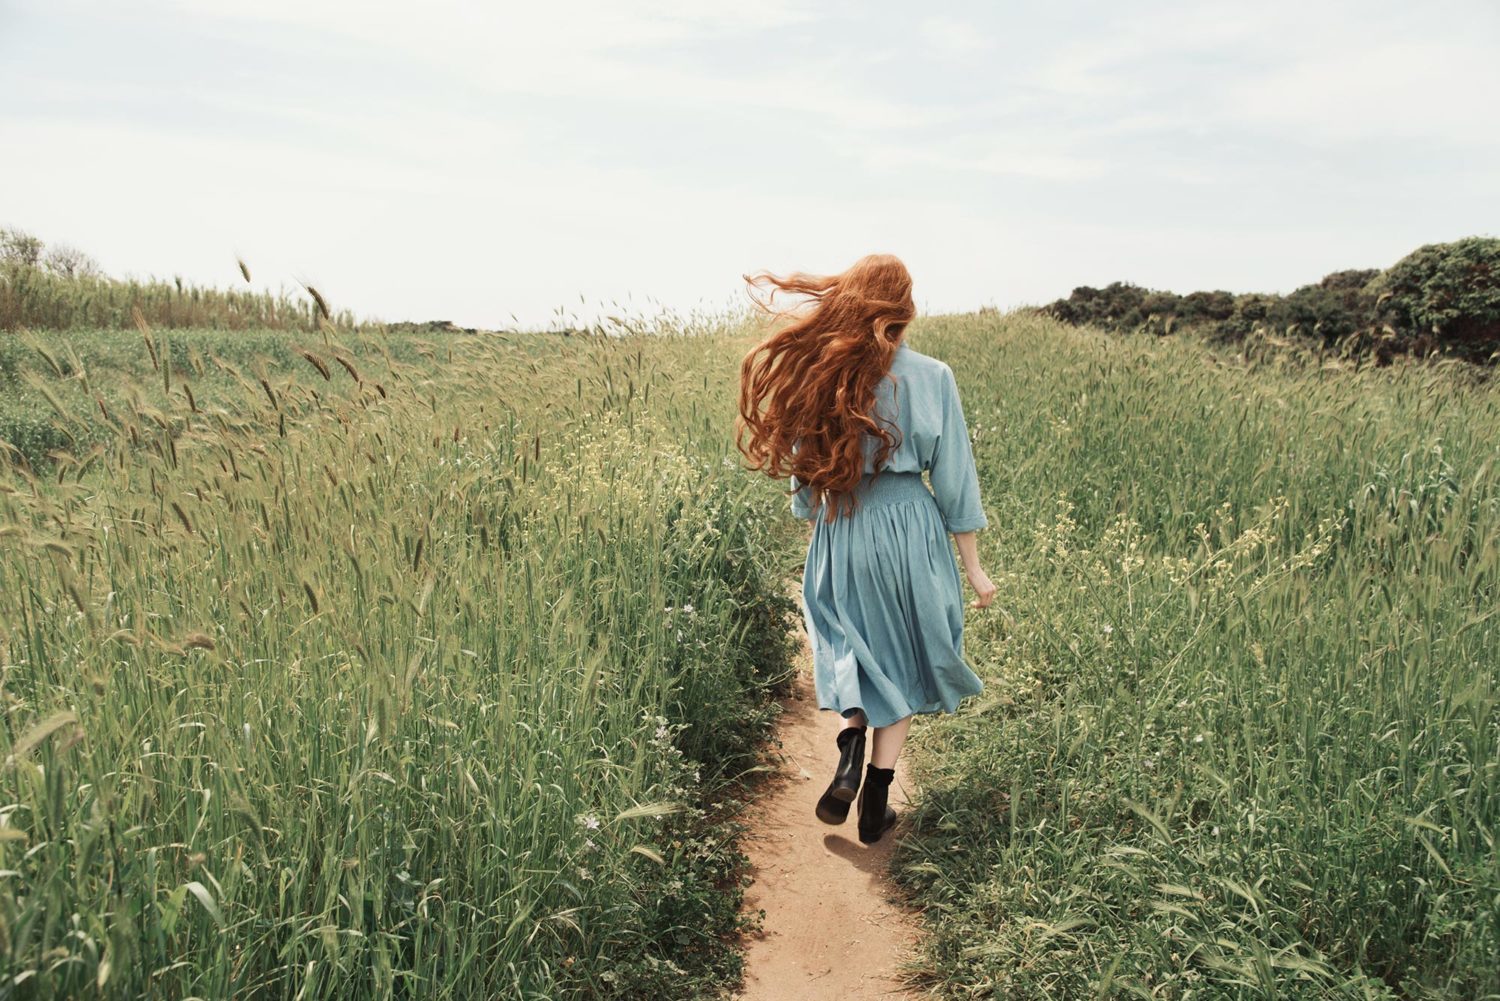 Giulia Beltrame cammina in un sentiero sterrato con i capelli rossi mossi dal vento